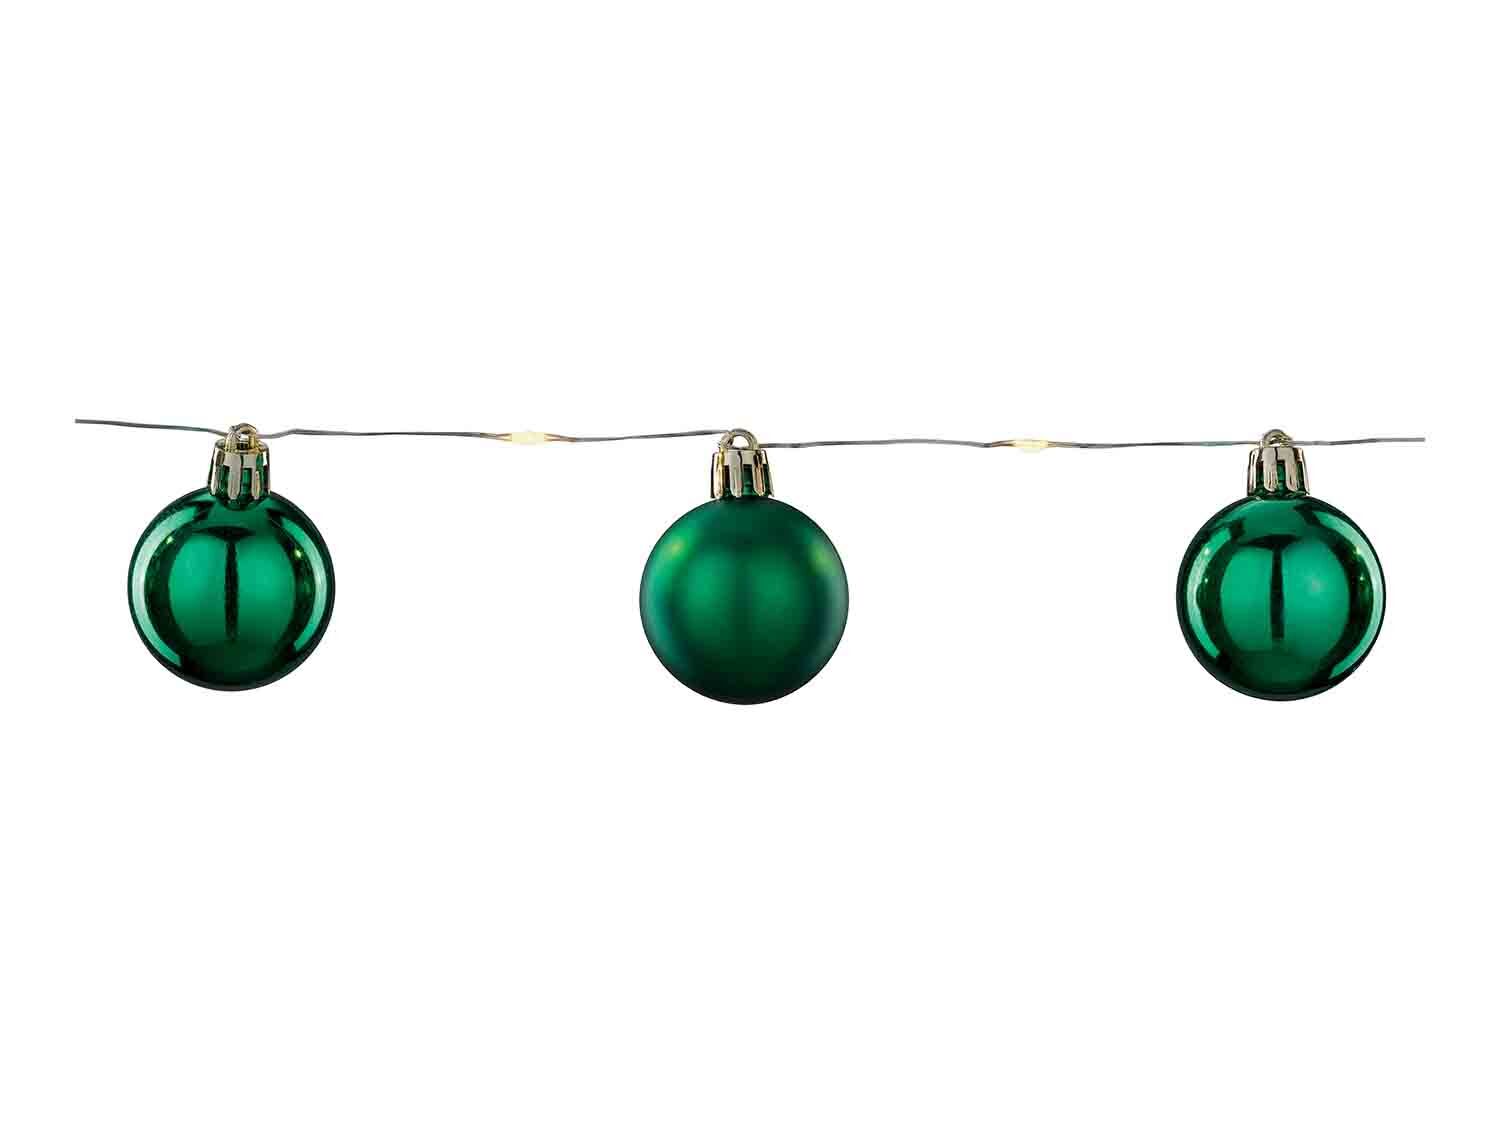 Bolas de Navidad con LED